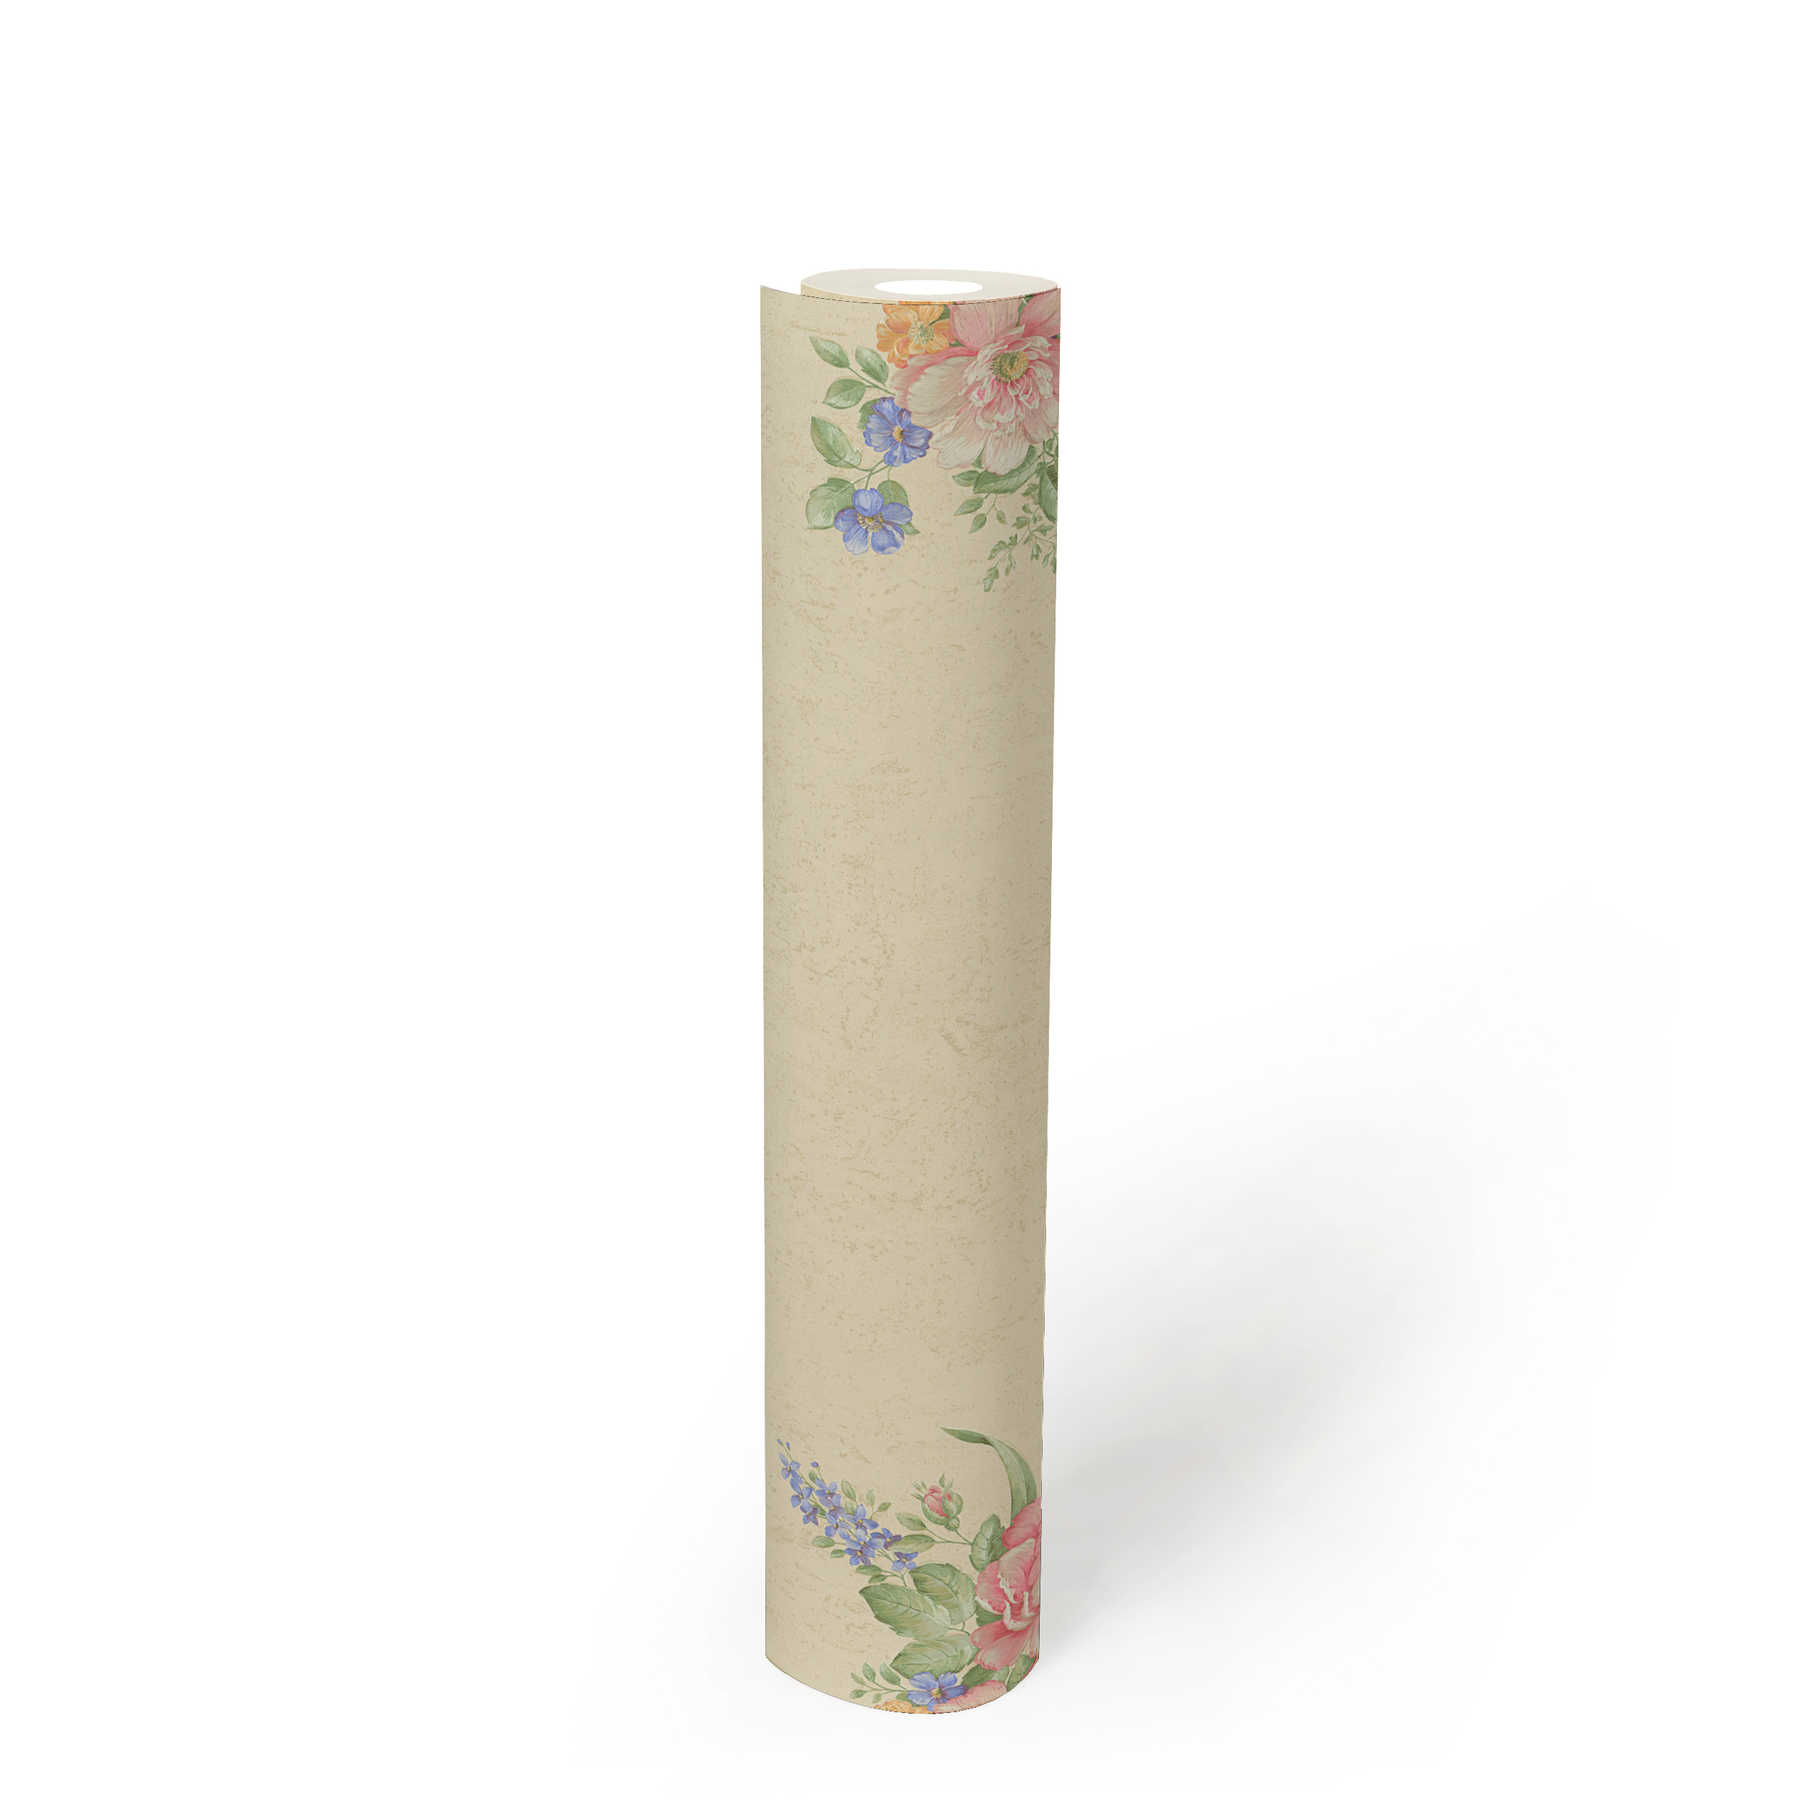             Vliesbehang bloemornamenten & structuurpatroon - crème, groen, roze
        